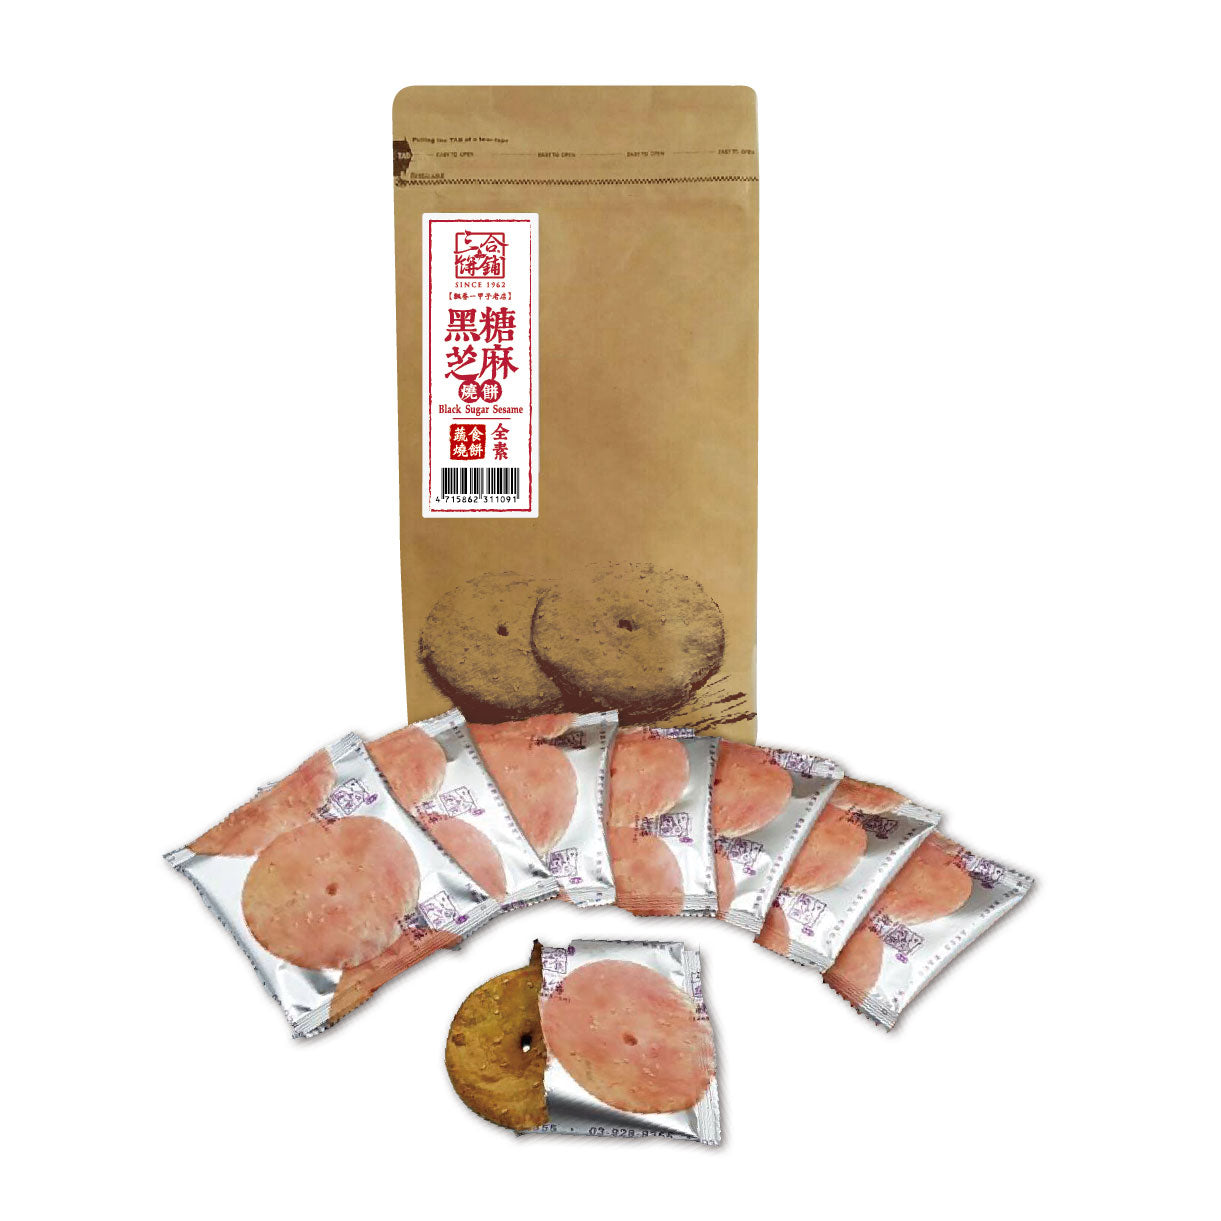 
                  
                    【CNY24 - Sun Hope Veg】Mini Biscuits(Brown Sugar Sesame)
                  
                